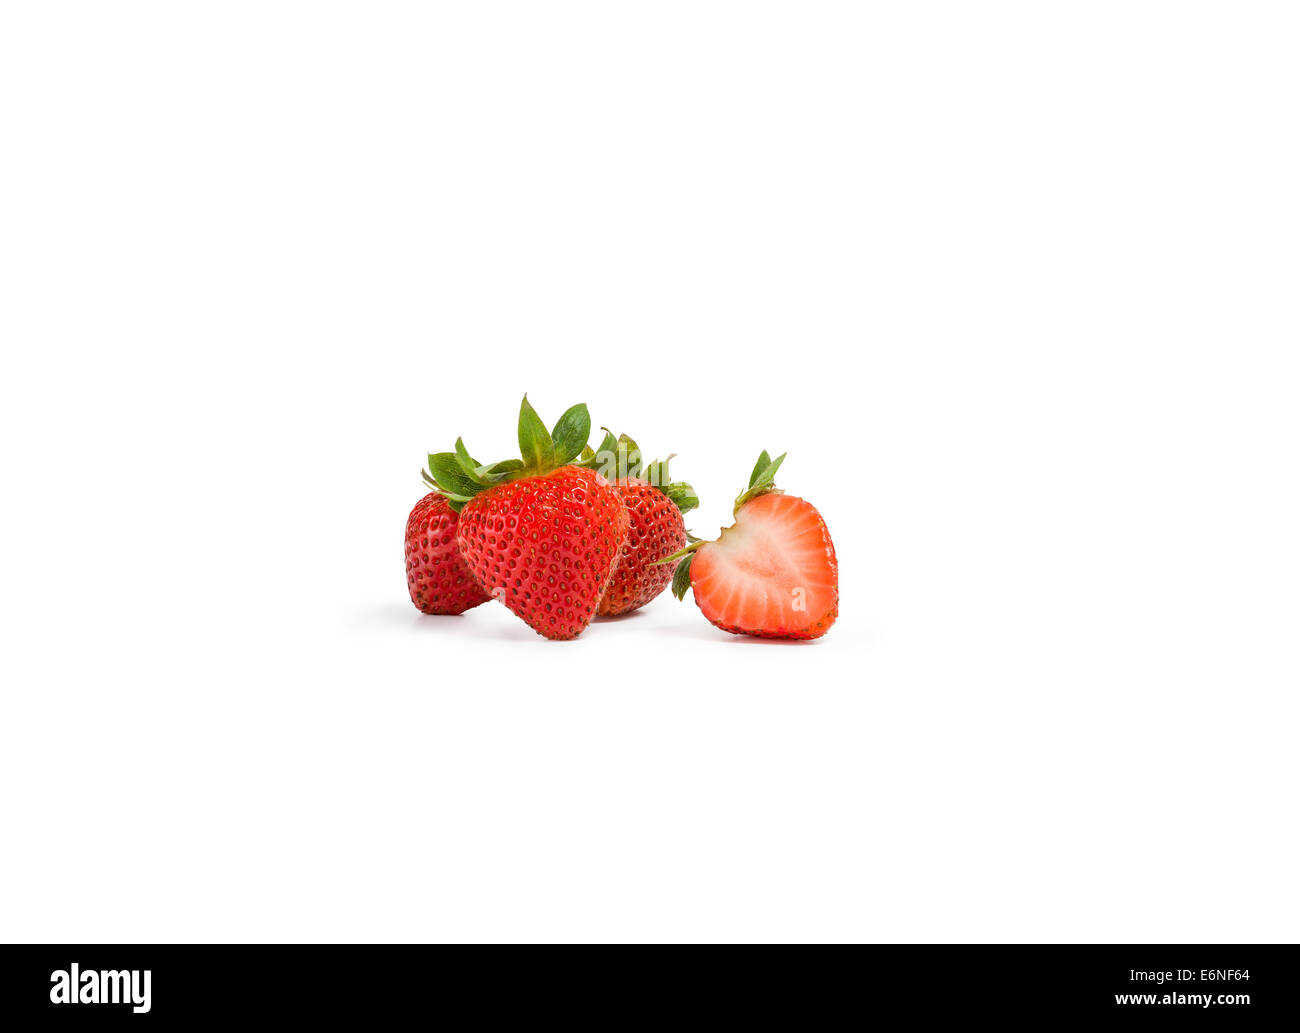 Isolated fresh fruits on white background Stock Photo